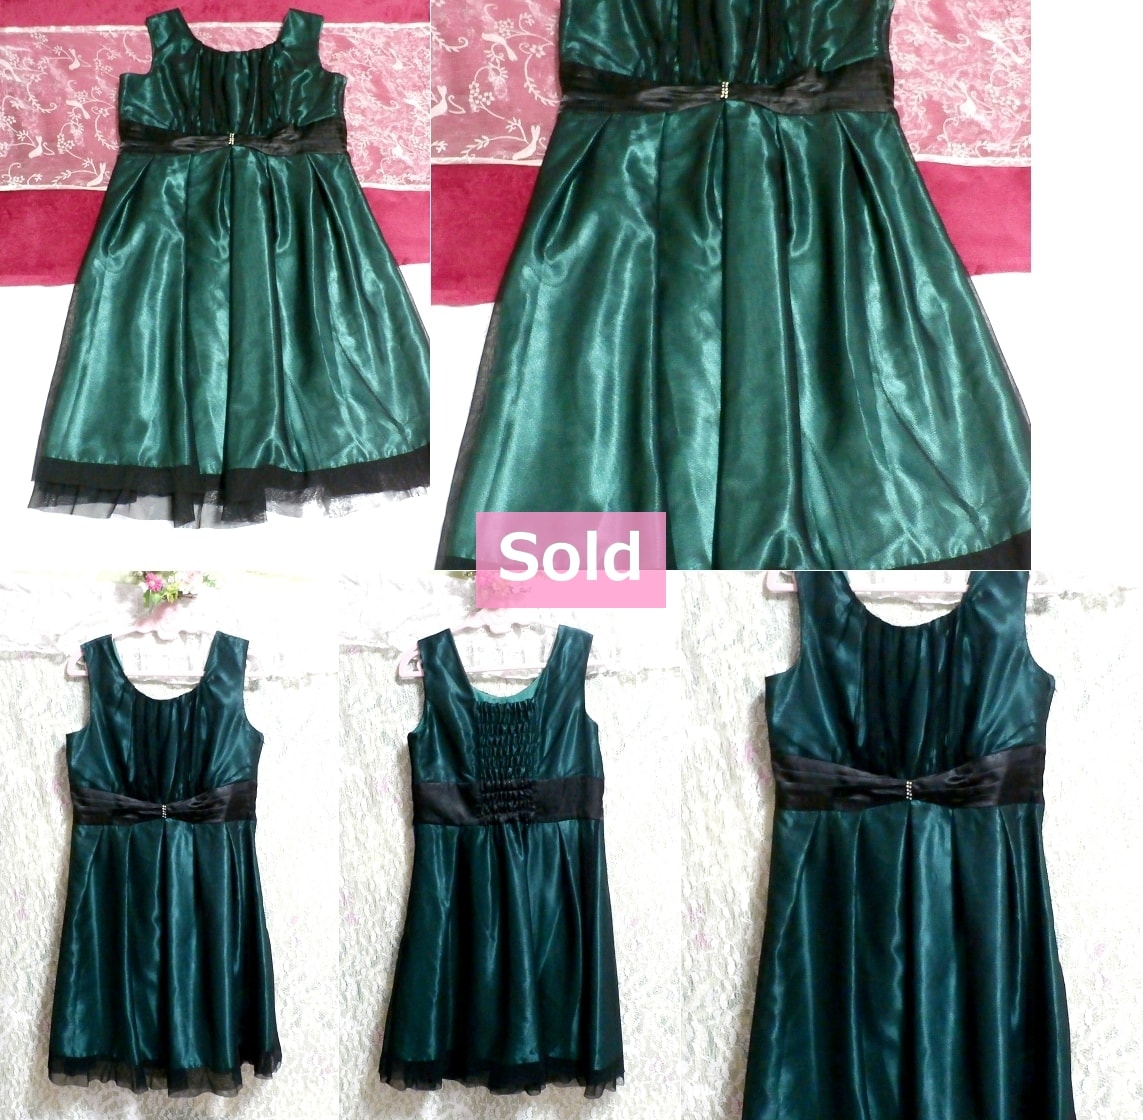 エメラルドグリーンと黒レース光沢ワンピースパーティドレス Emerald green black lace gloss onepiece party dress